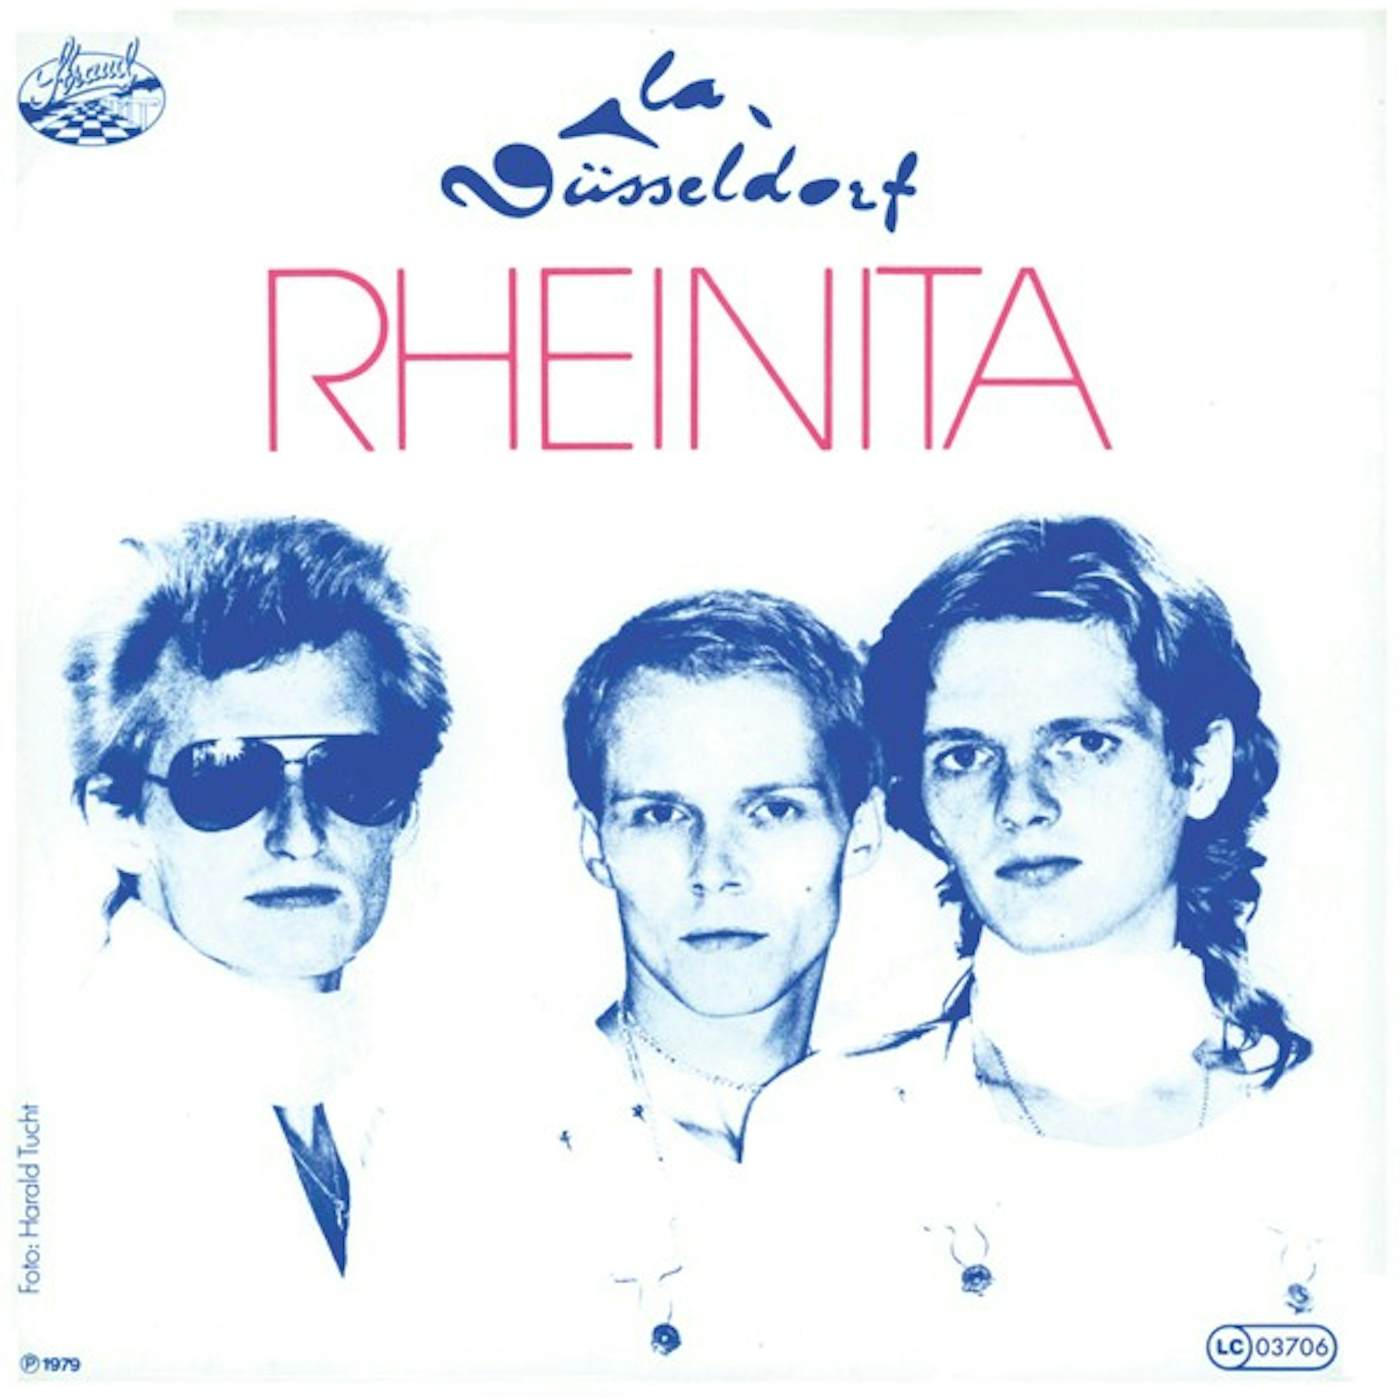 La Düsseldorf Rheinita/Viva Vinyl Record